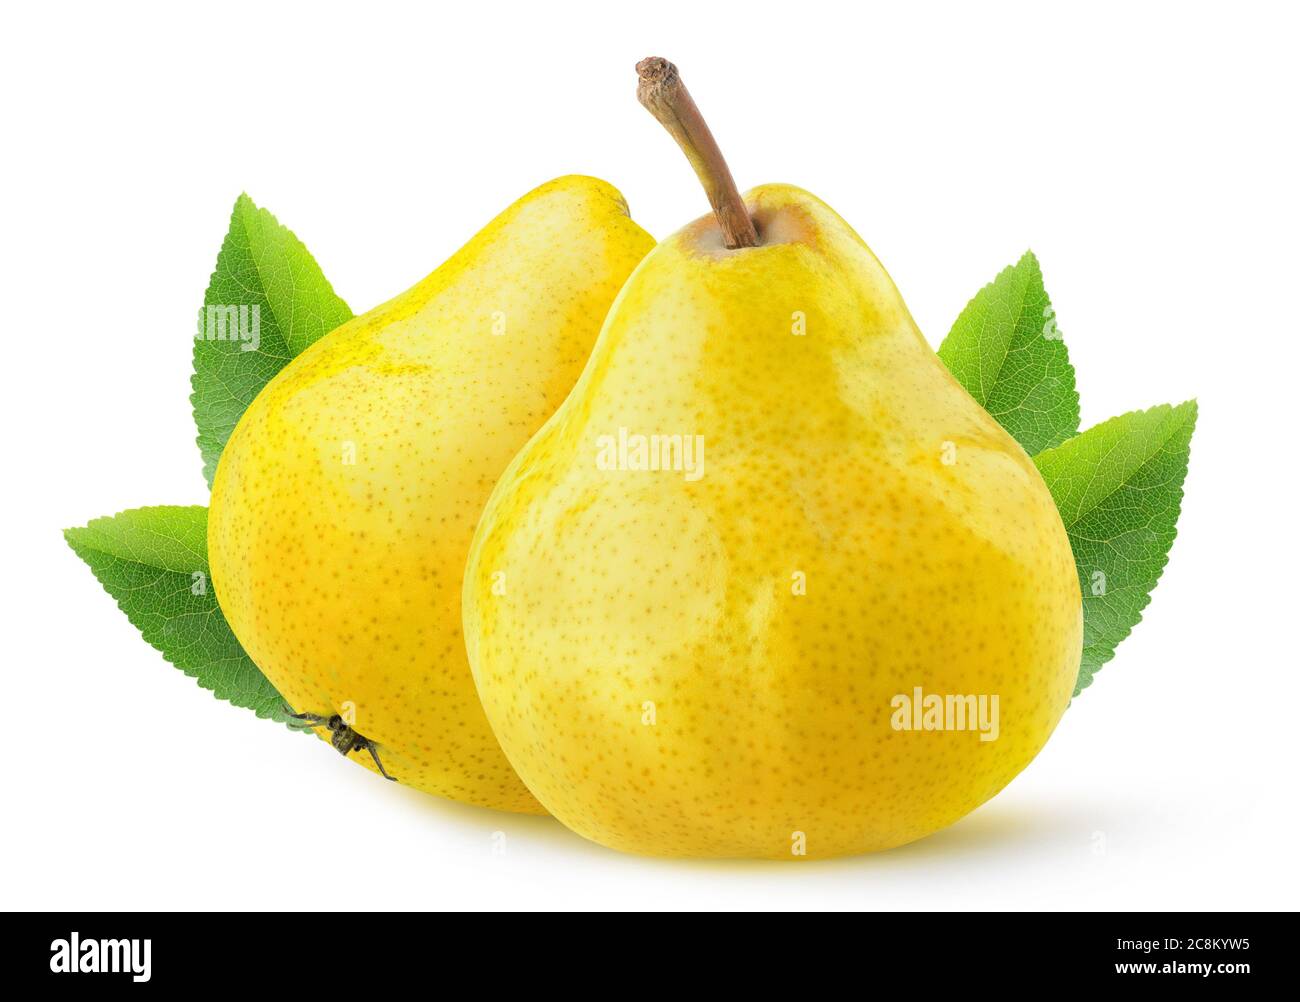 Poires isolées. Deux fruits de poire jaunes entiers isolés sur fond blanc avec des feuilles Banque D'Images